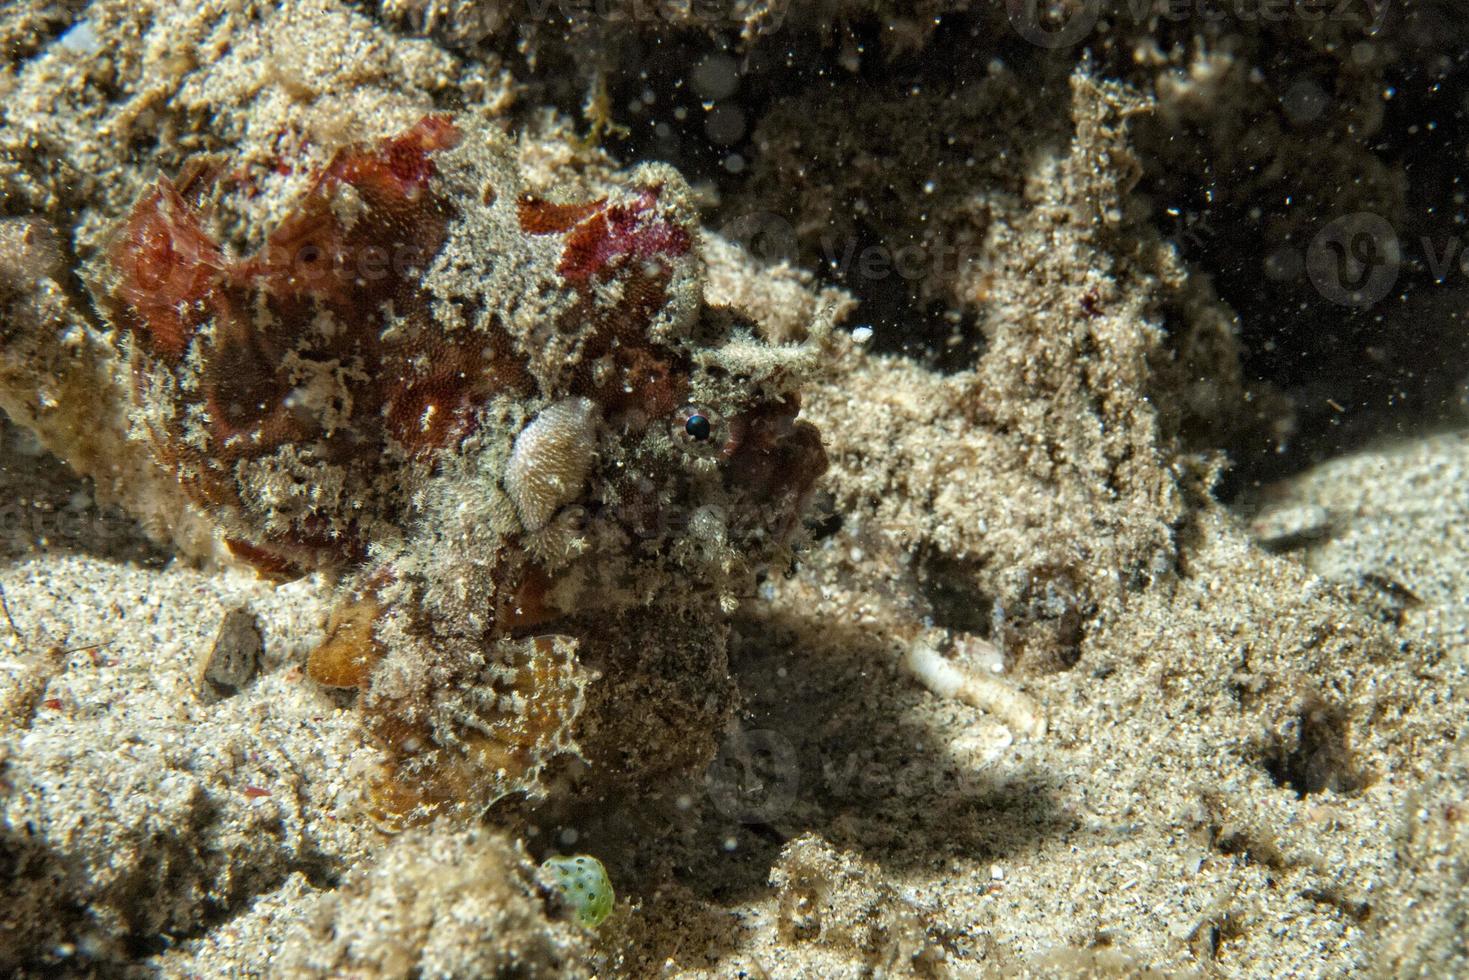 cuttlefish underwater, close up photo